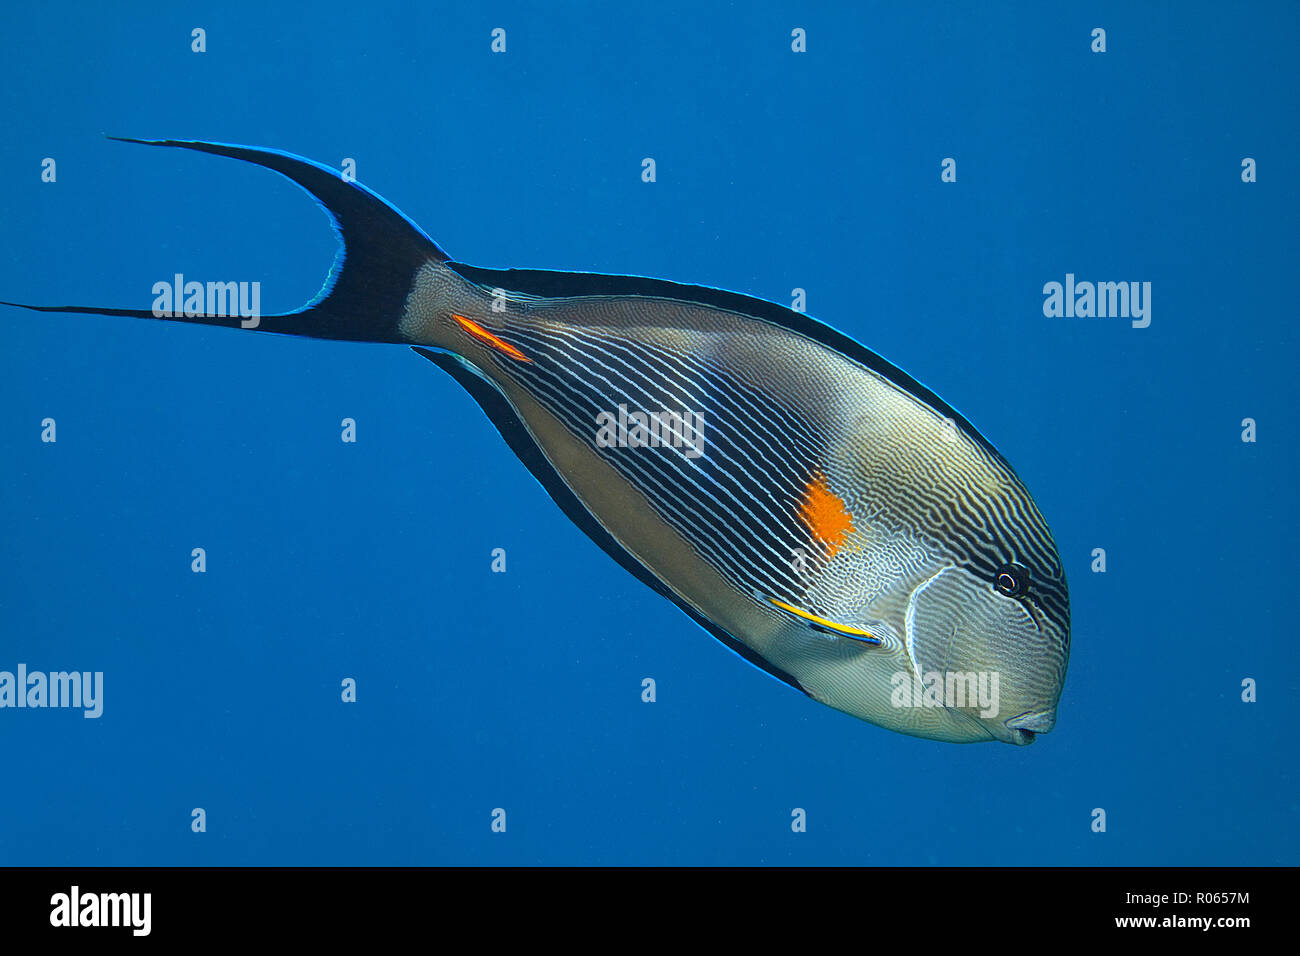 Arabischer Doktorfisch (Acanthurus sohal) im blauen Wasser, Sinai, Ägypten | Sohal surgeonfish (Acanthurus sohal) al Mare Blu, Sinai, Egitto Foto Stock